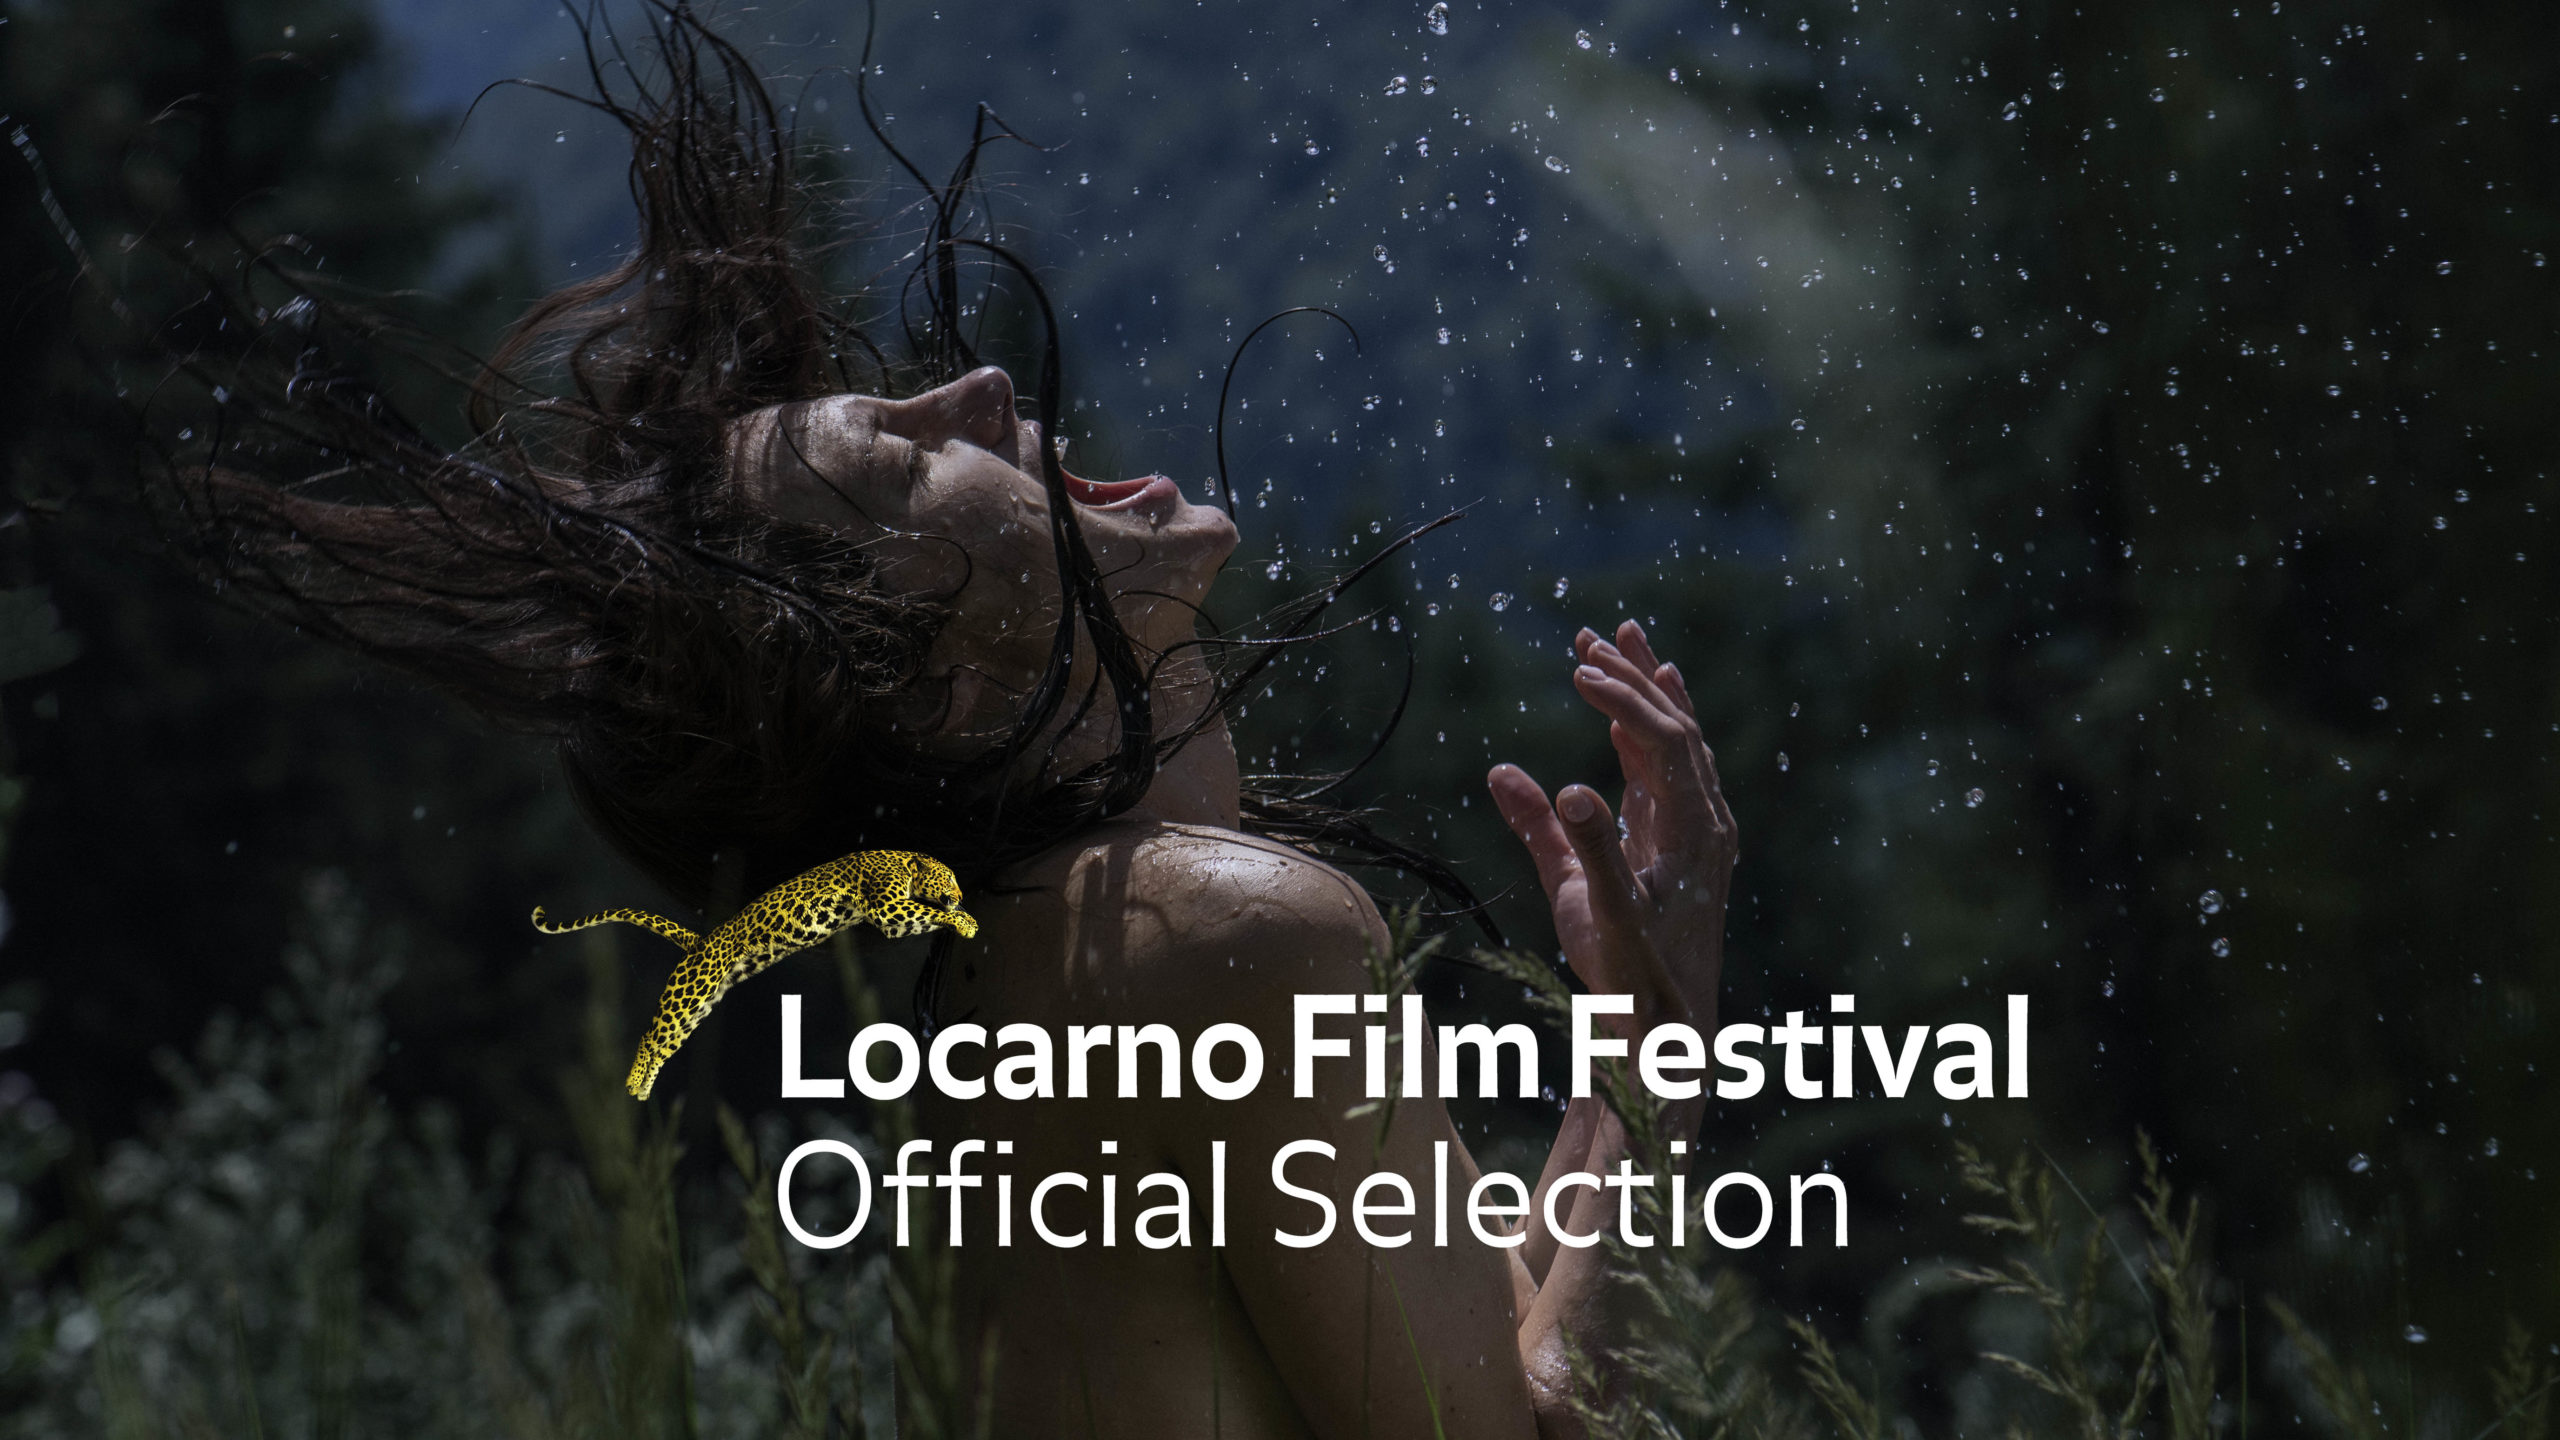 Nightsiren will premiere at Locarno Film Festival